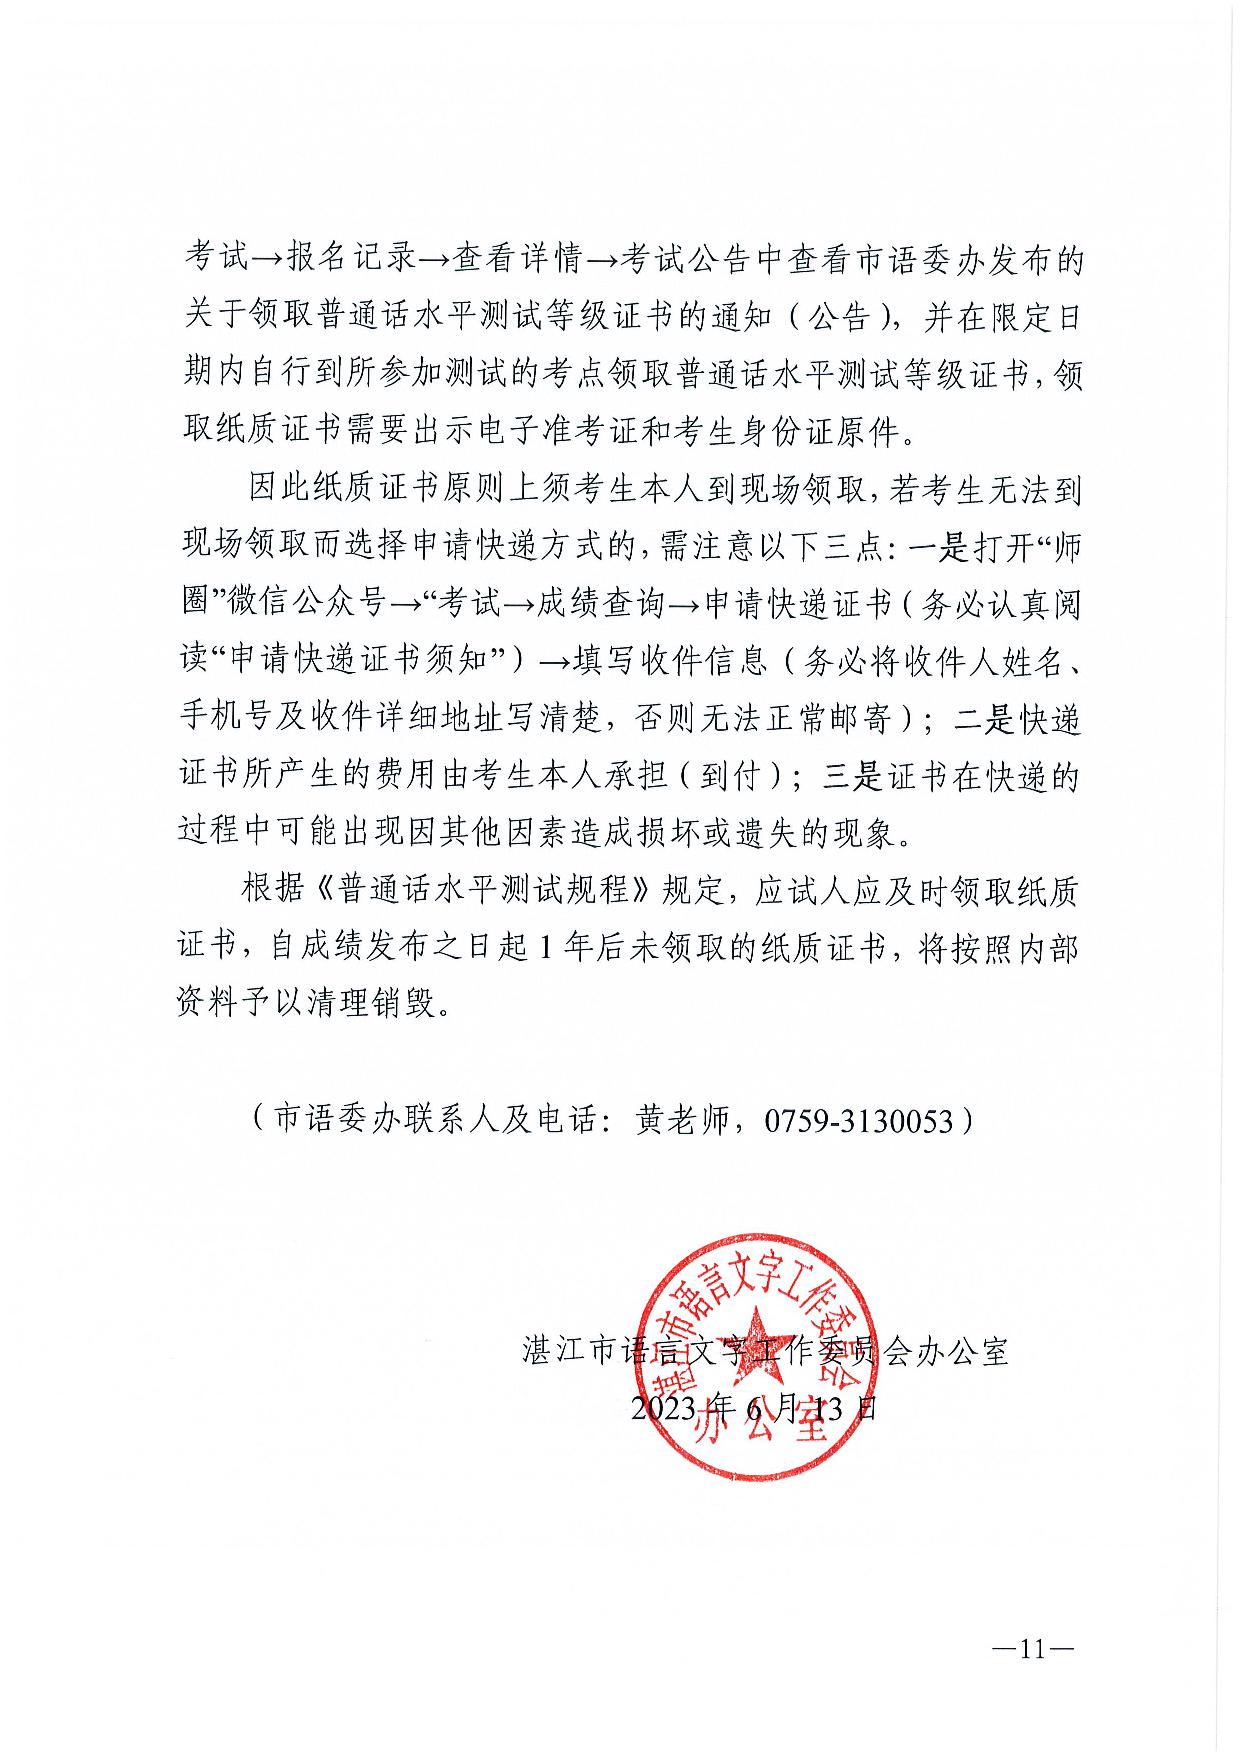 湛江市语言文字工作委员会办公室关于2023年第二期面向社会人员普通话水平测试工作安排的通知-011.jpg